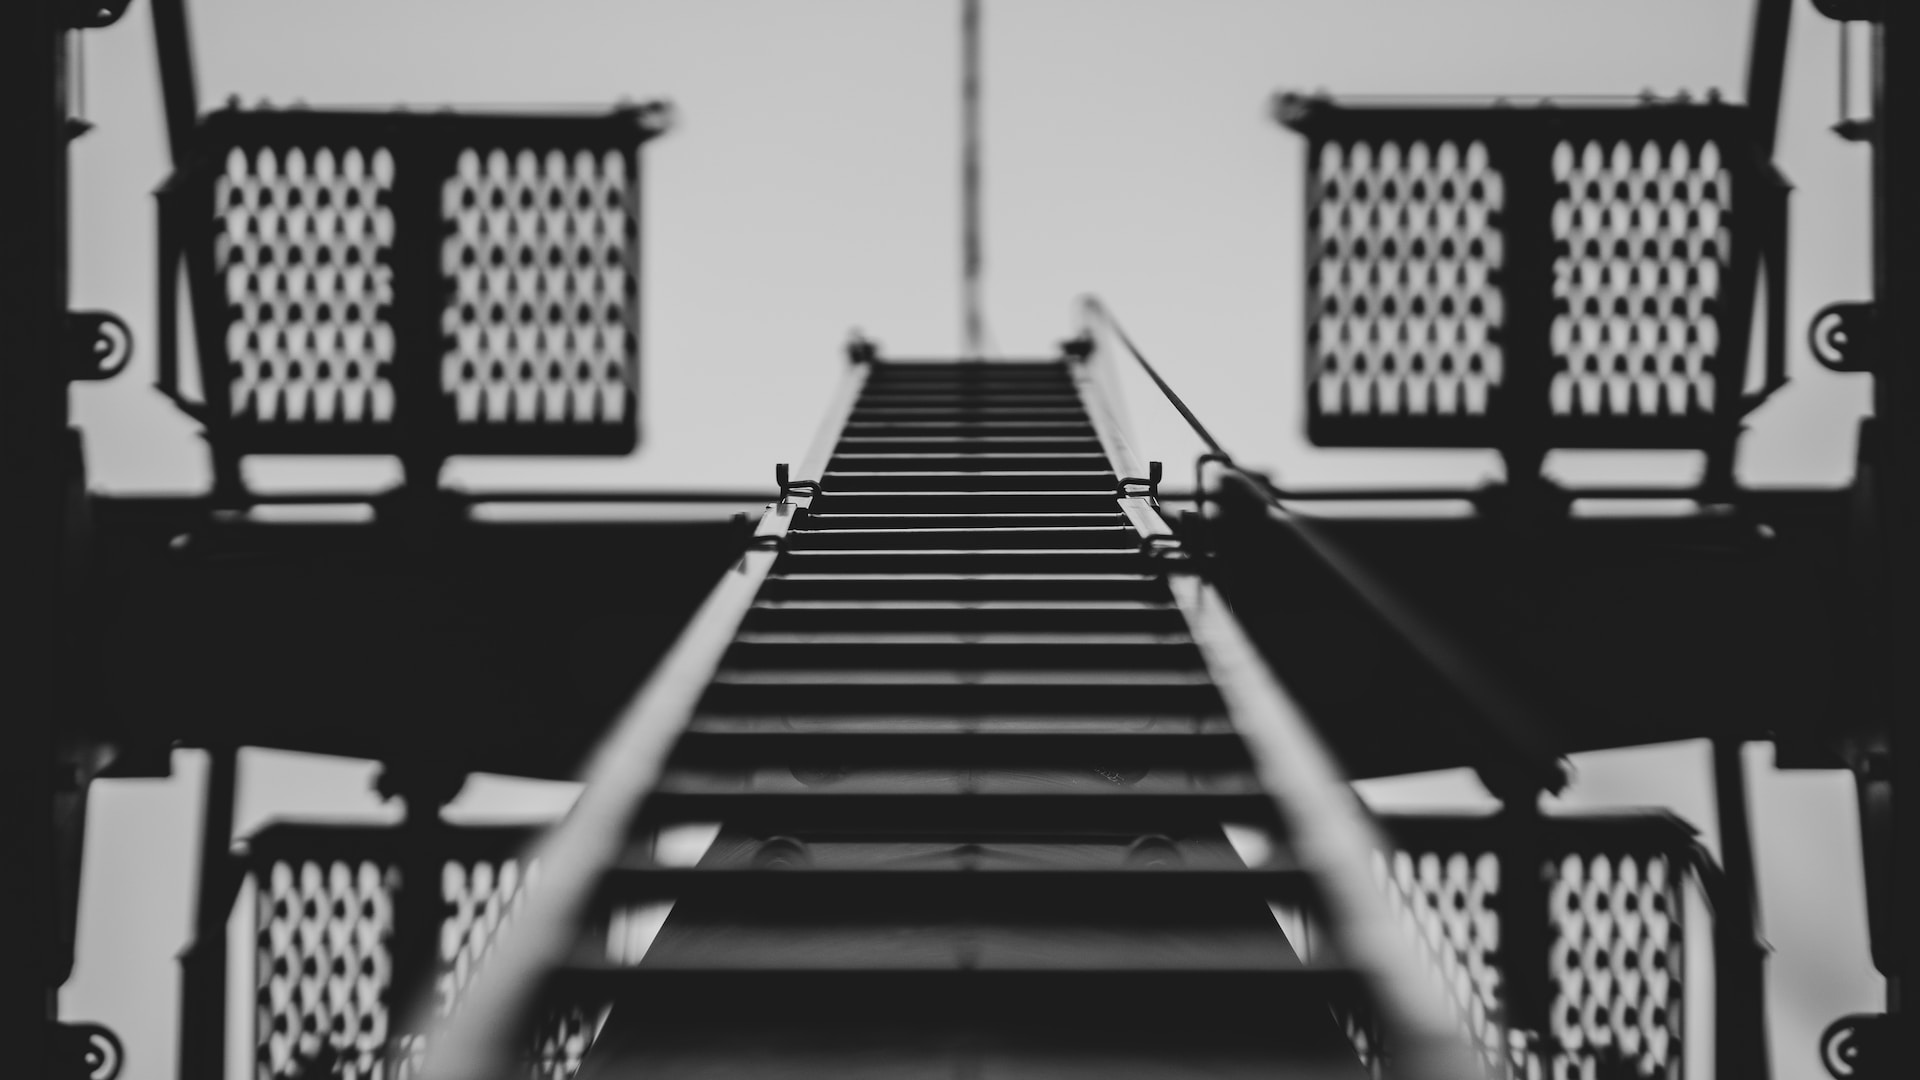 A ladder